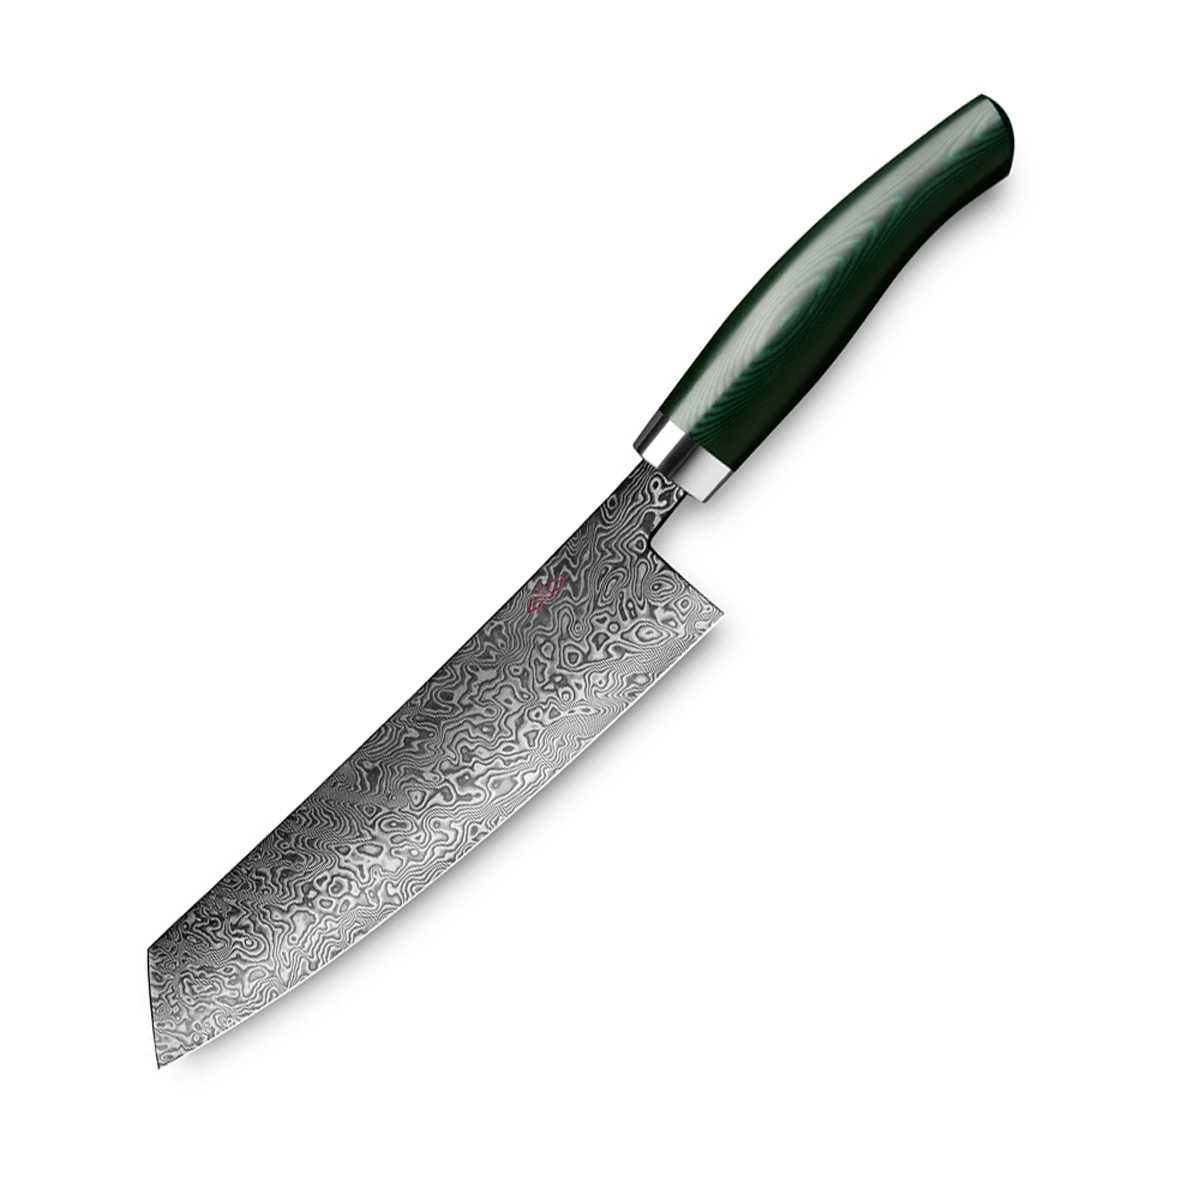 Nesmuk Exklusiv C90 Damast Kochmesser 18 cm mit Griff aus grünem Micarta